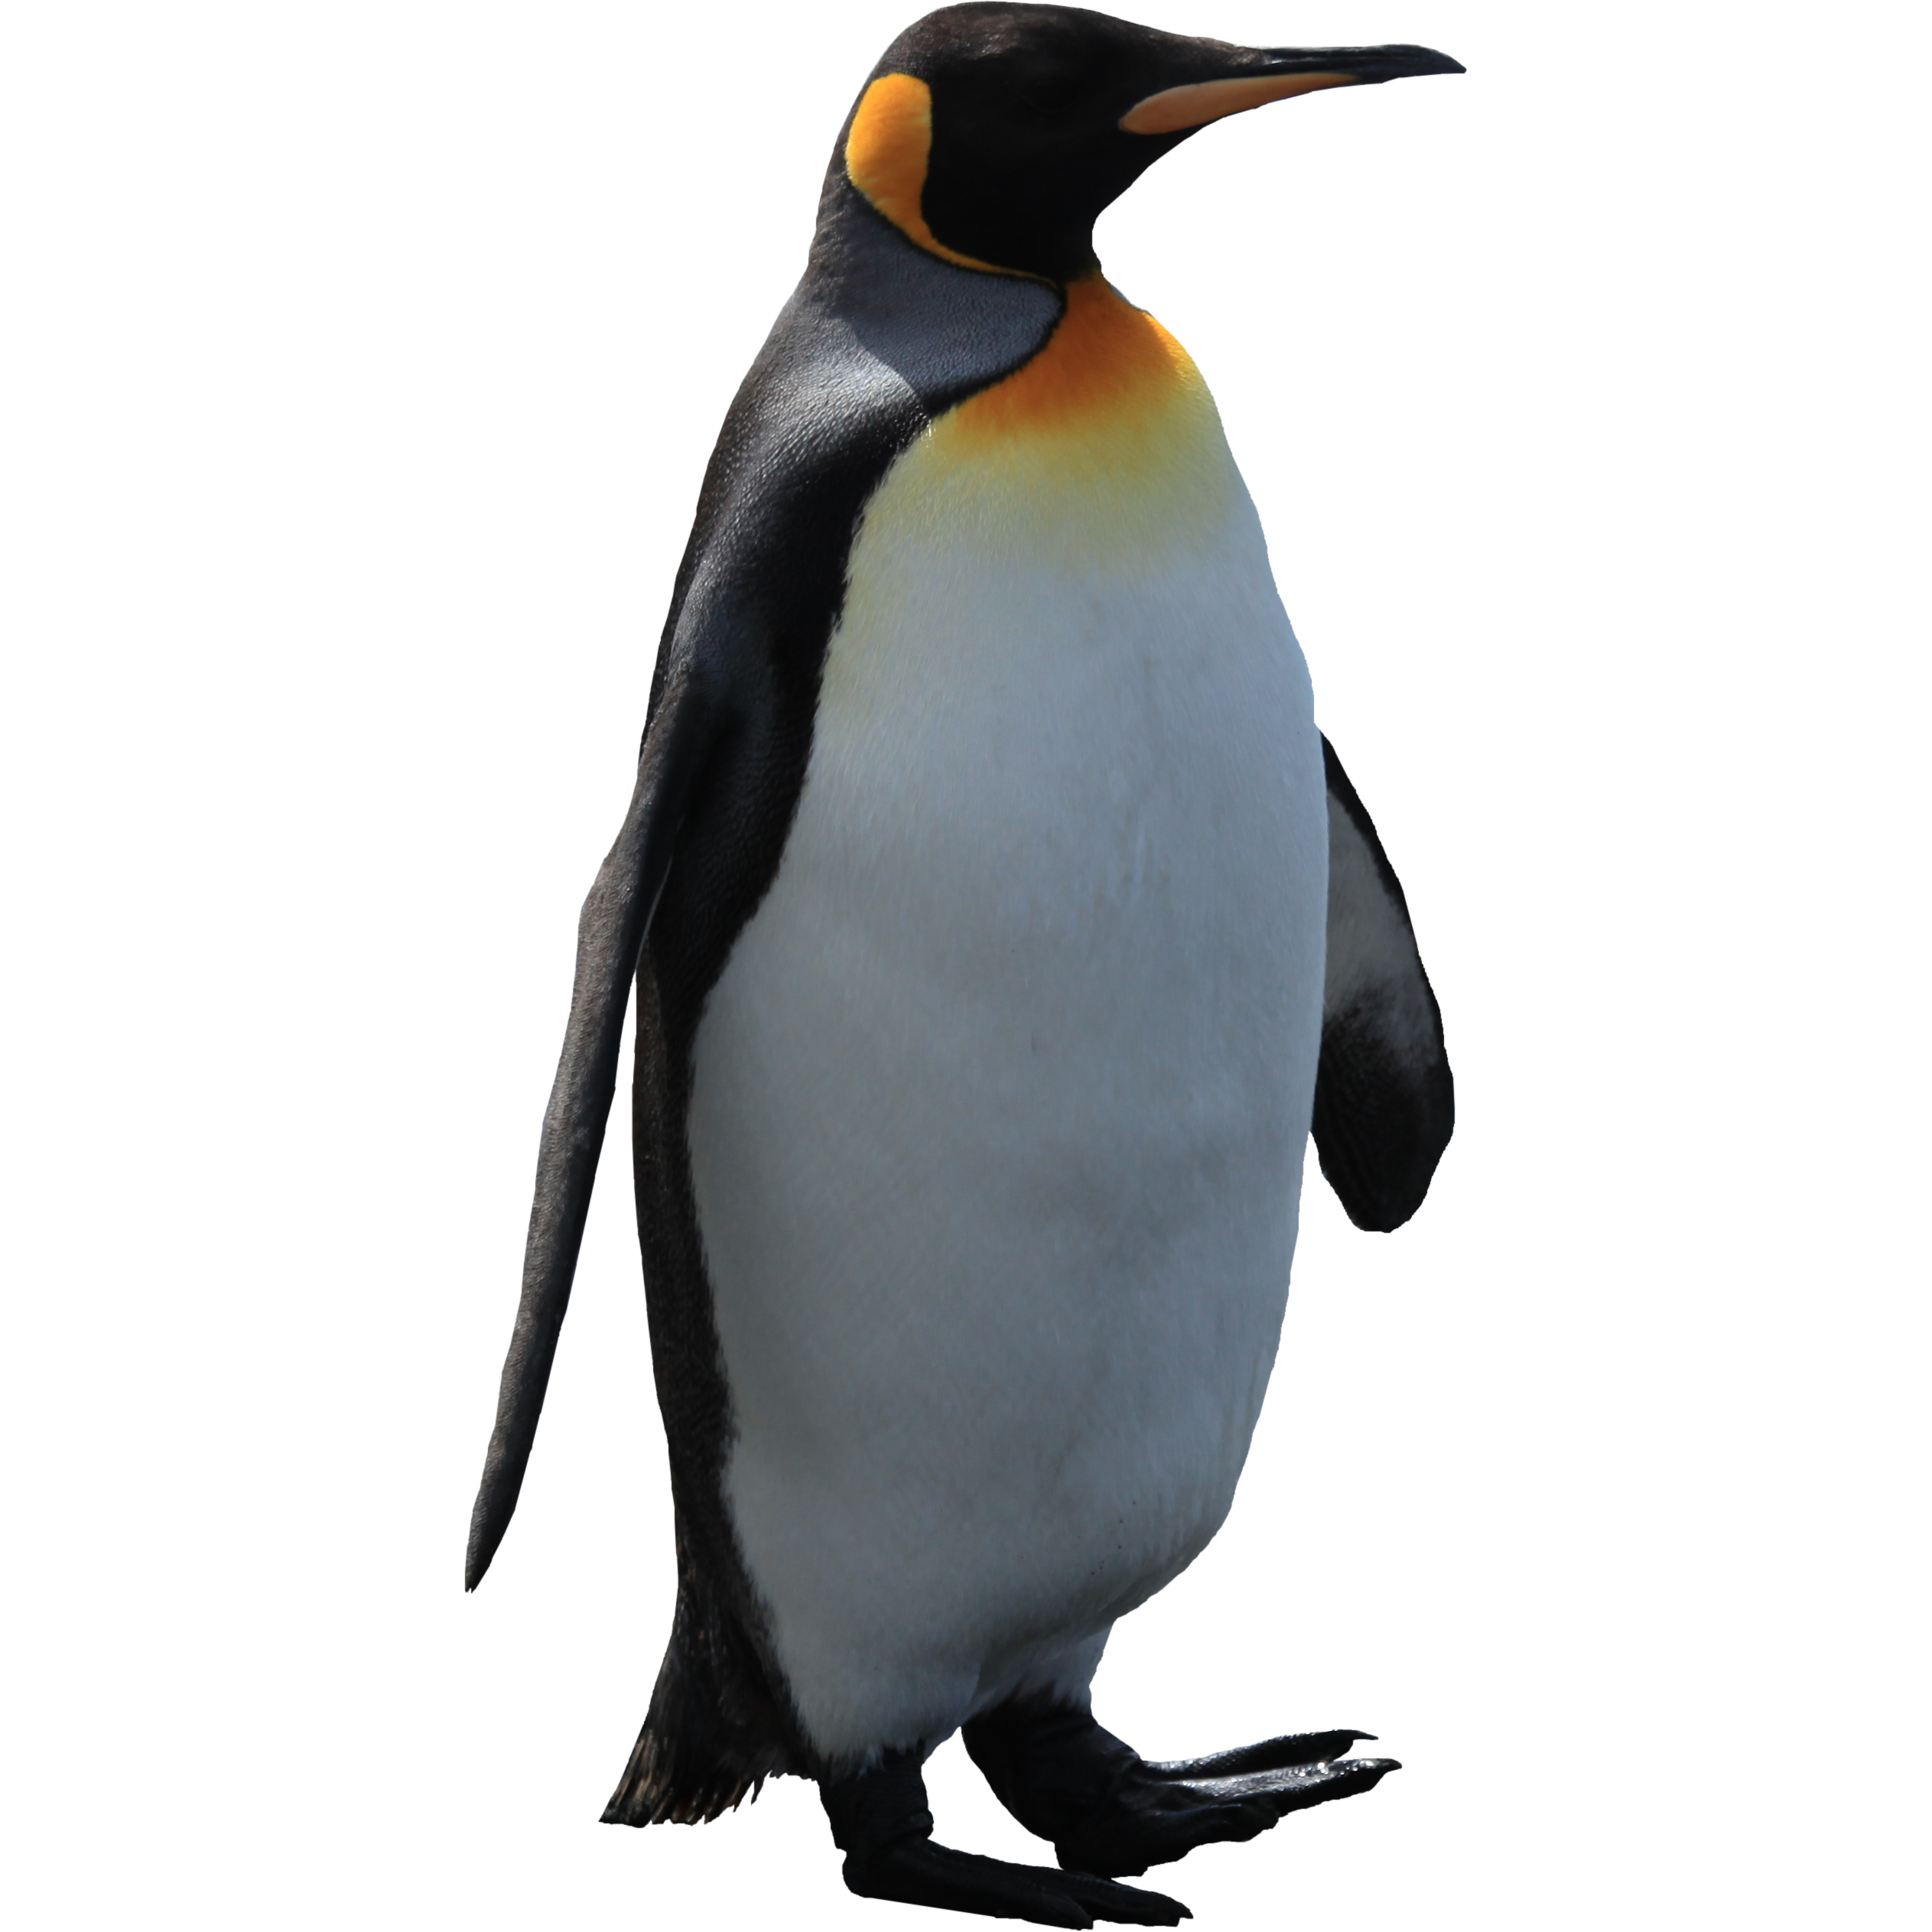 Pinguino imperatore